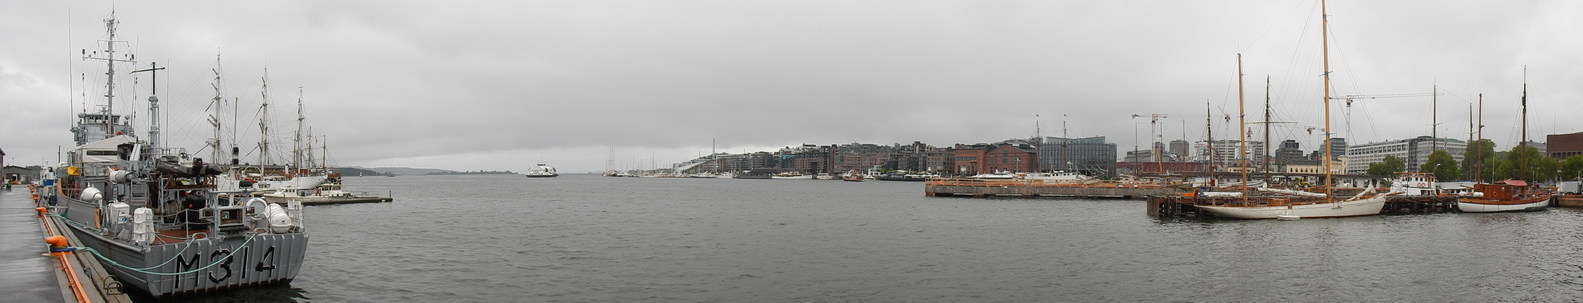 Oslo21.jpg